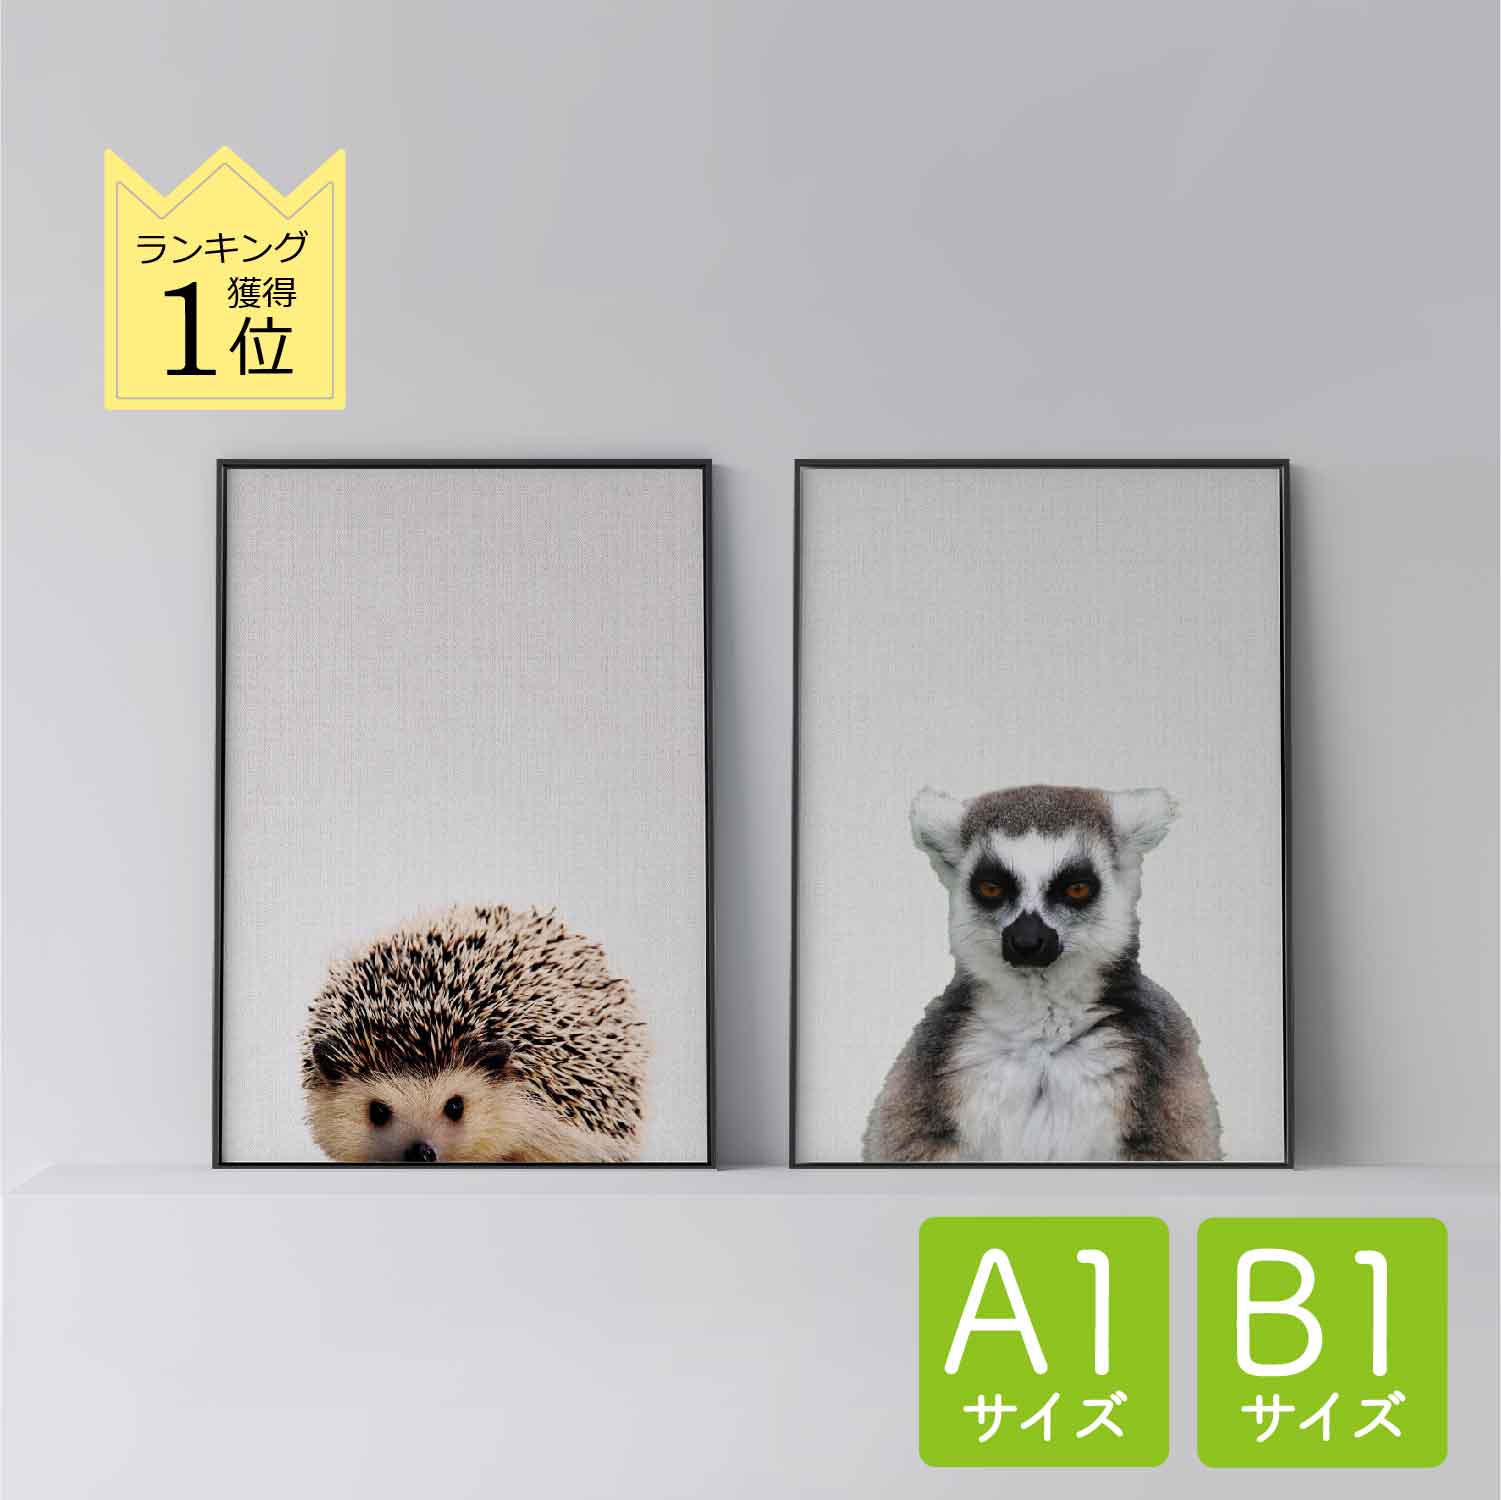 ポスター 北欧 おしゃれ インテリア A1 B1 アート アートパネル 【 Hedgehog 】【 Lemur 】 ハリネズミ 動物 キツネザル アニマル モダン シンプル